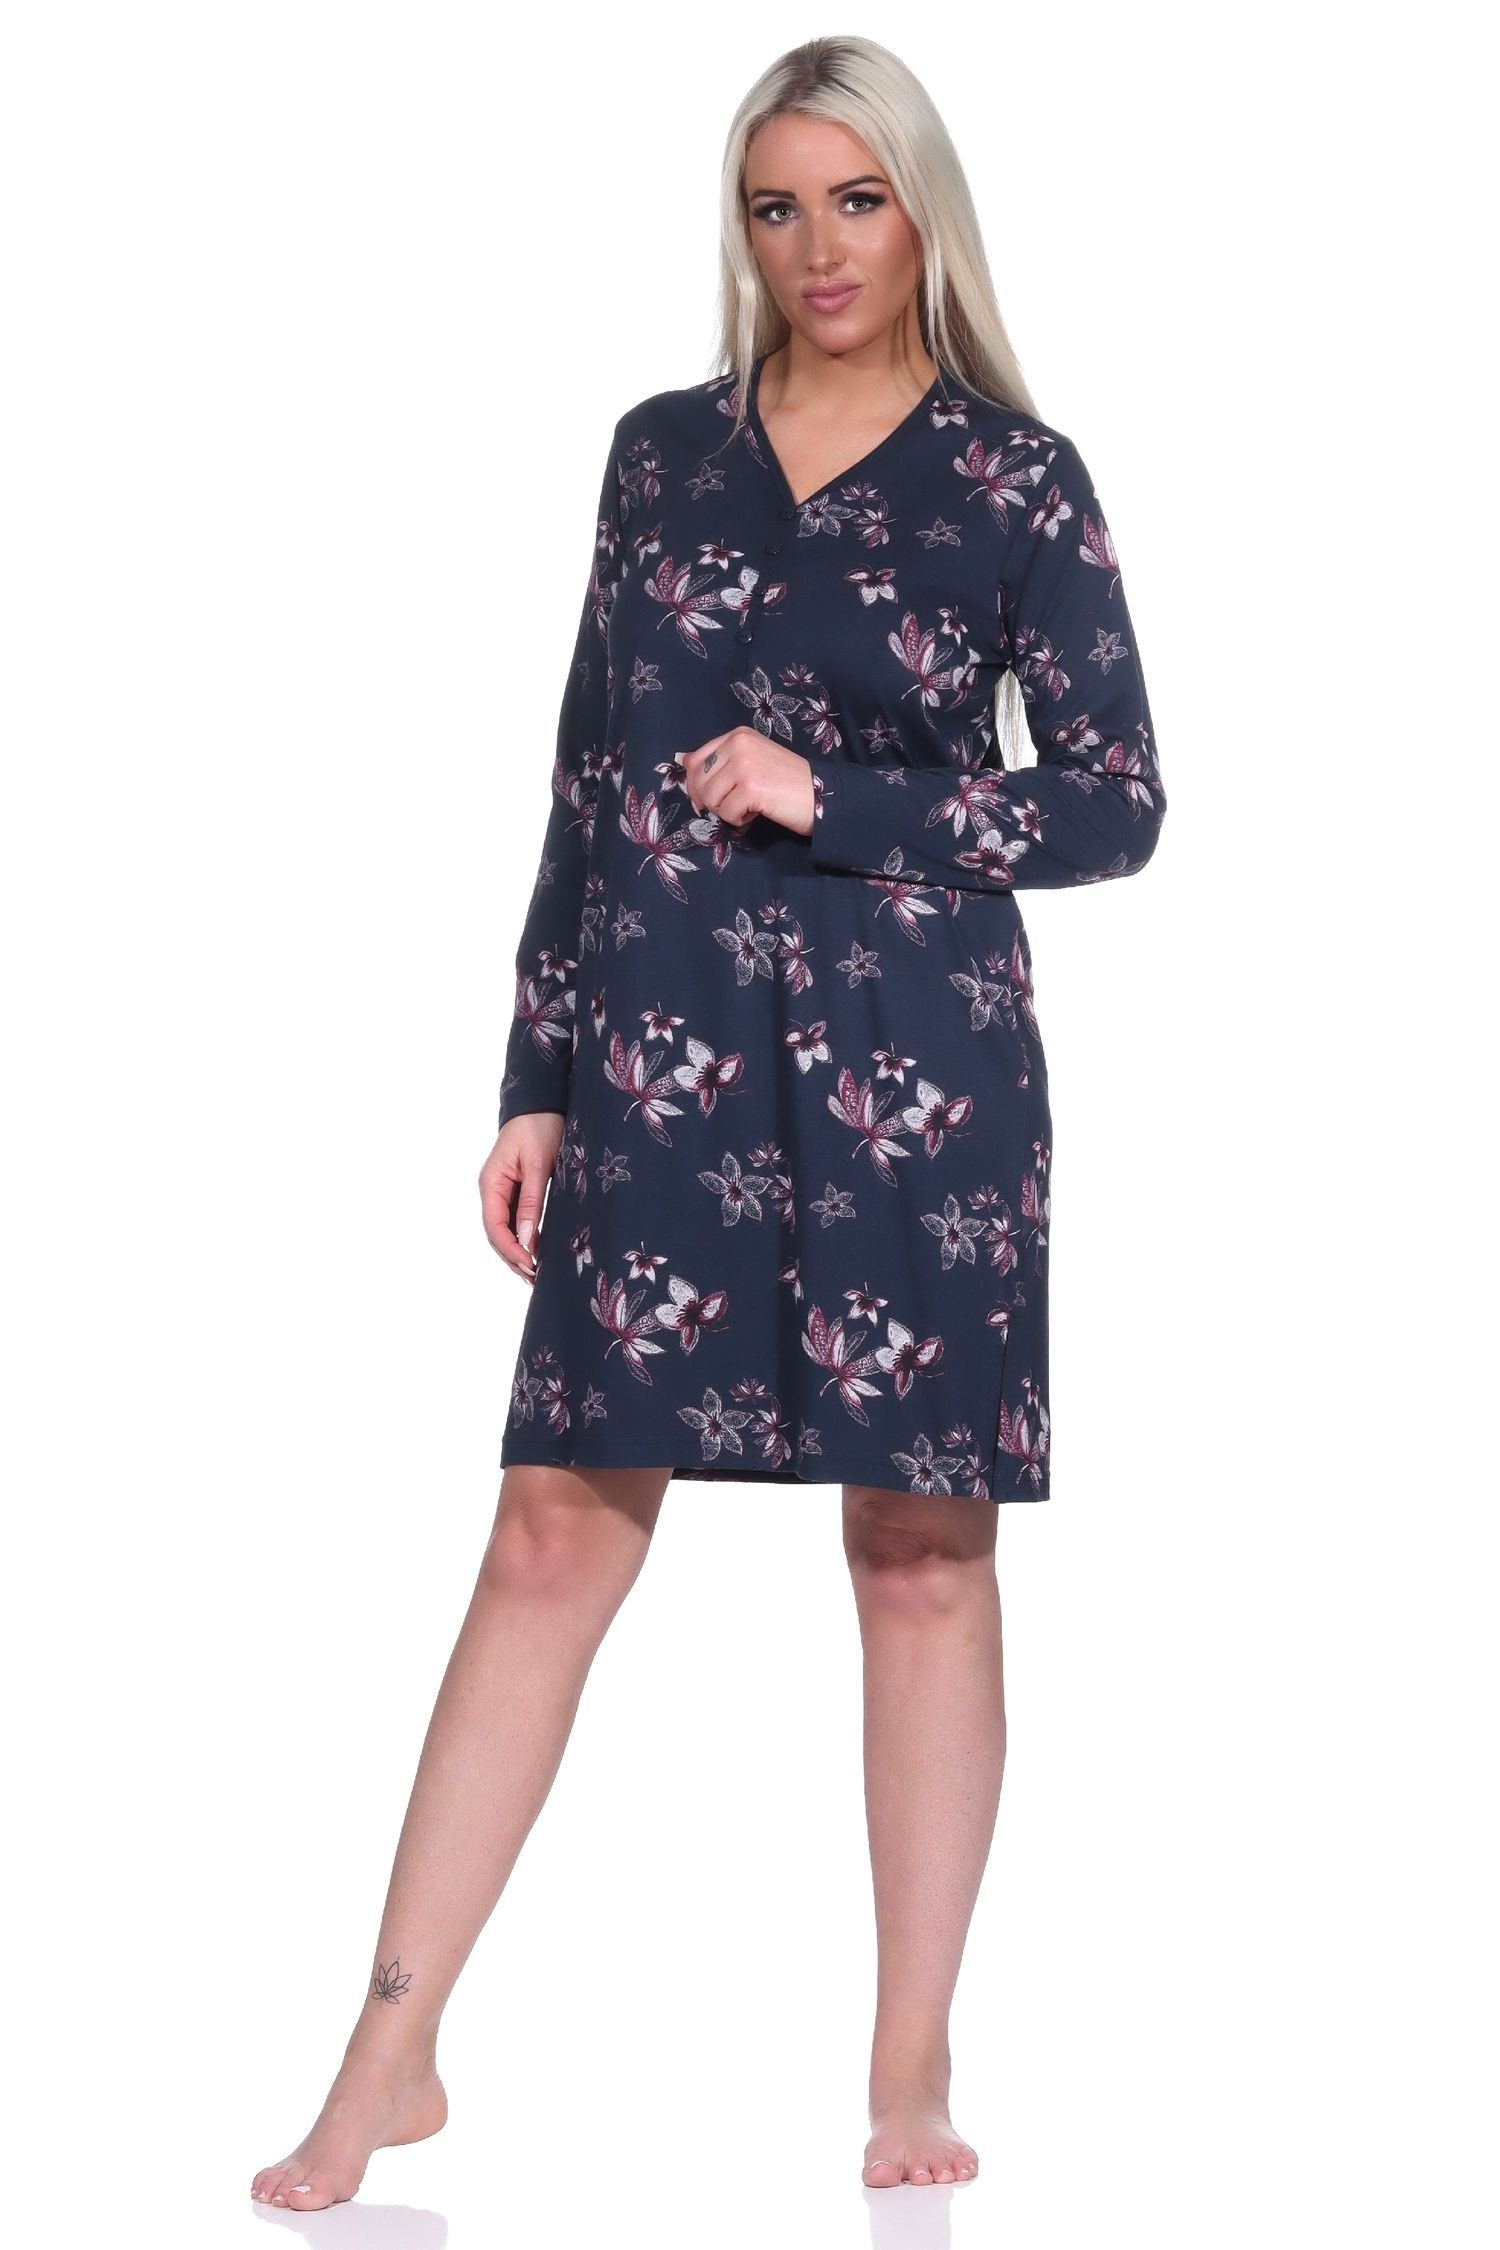 Normann Nachthemd Damen Nachthemd langarm in floralem Design - auch in Übergrößen marine